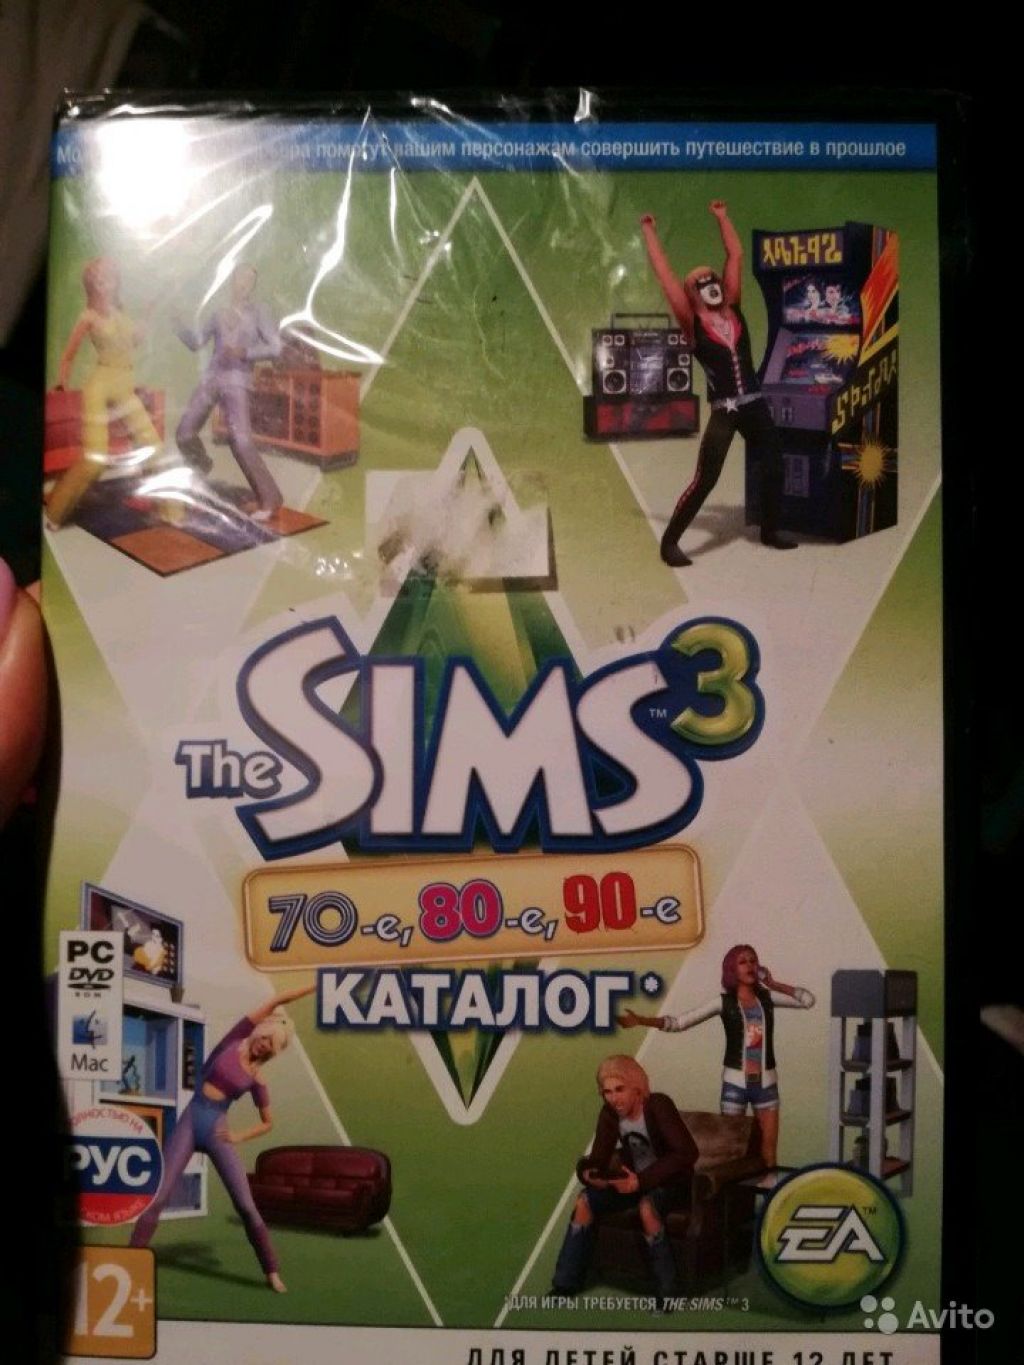 The Sims3. Официальный каталог к игре в Москве. Фото 1